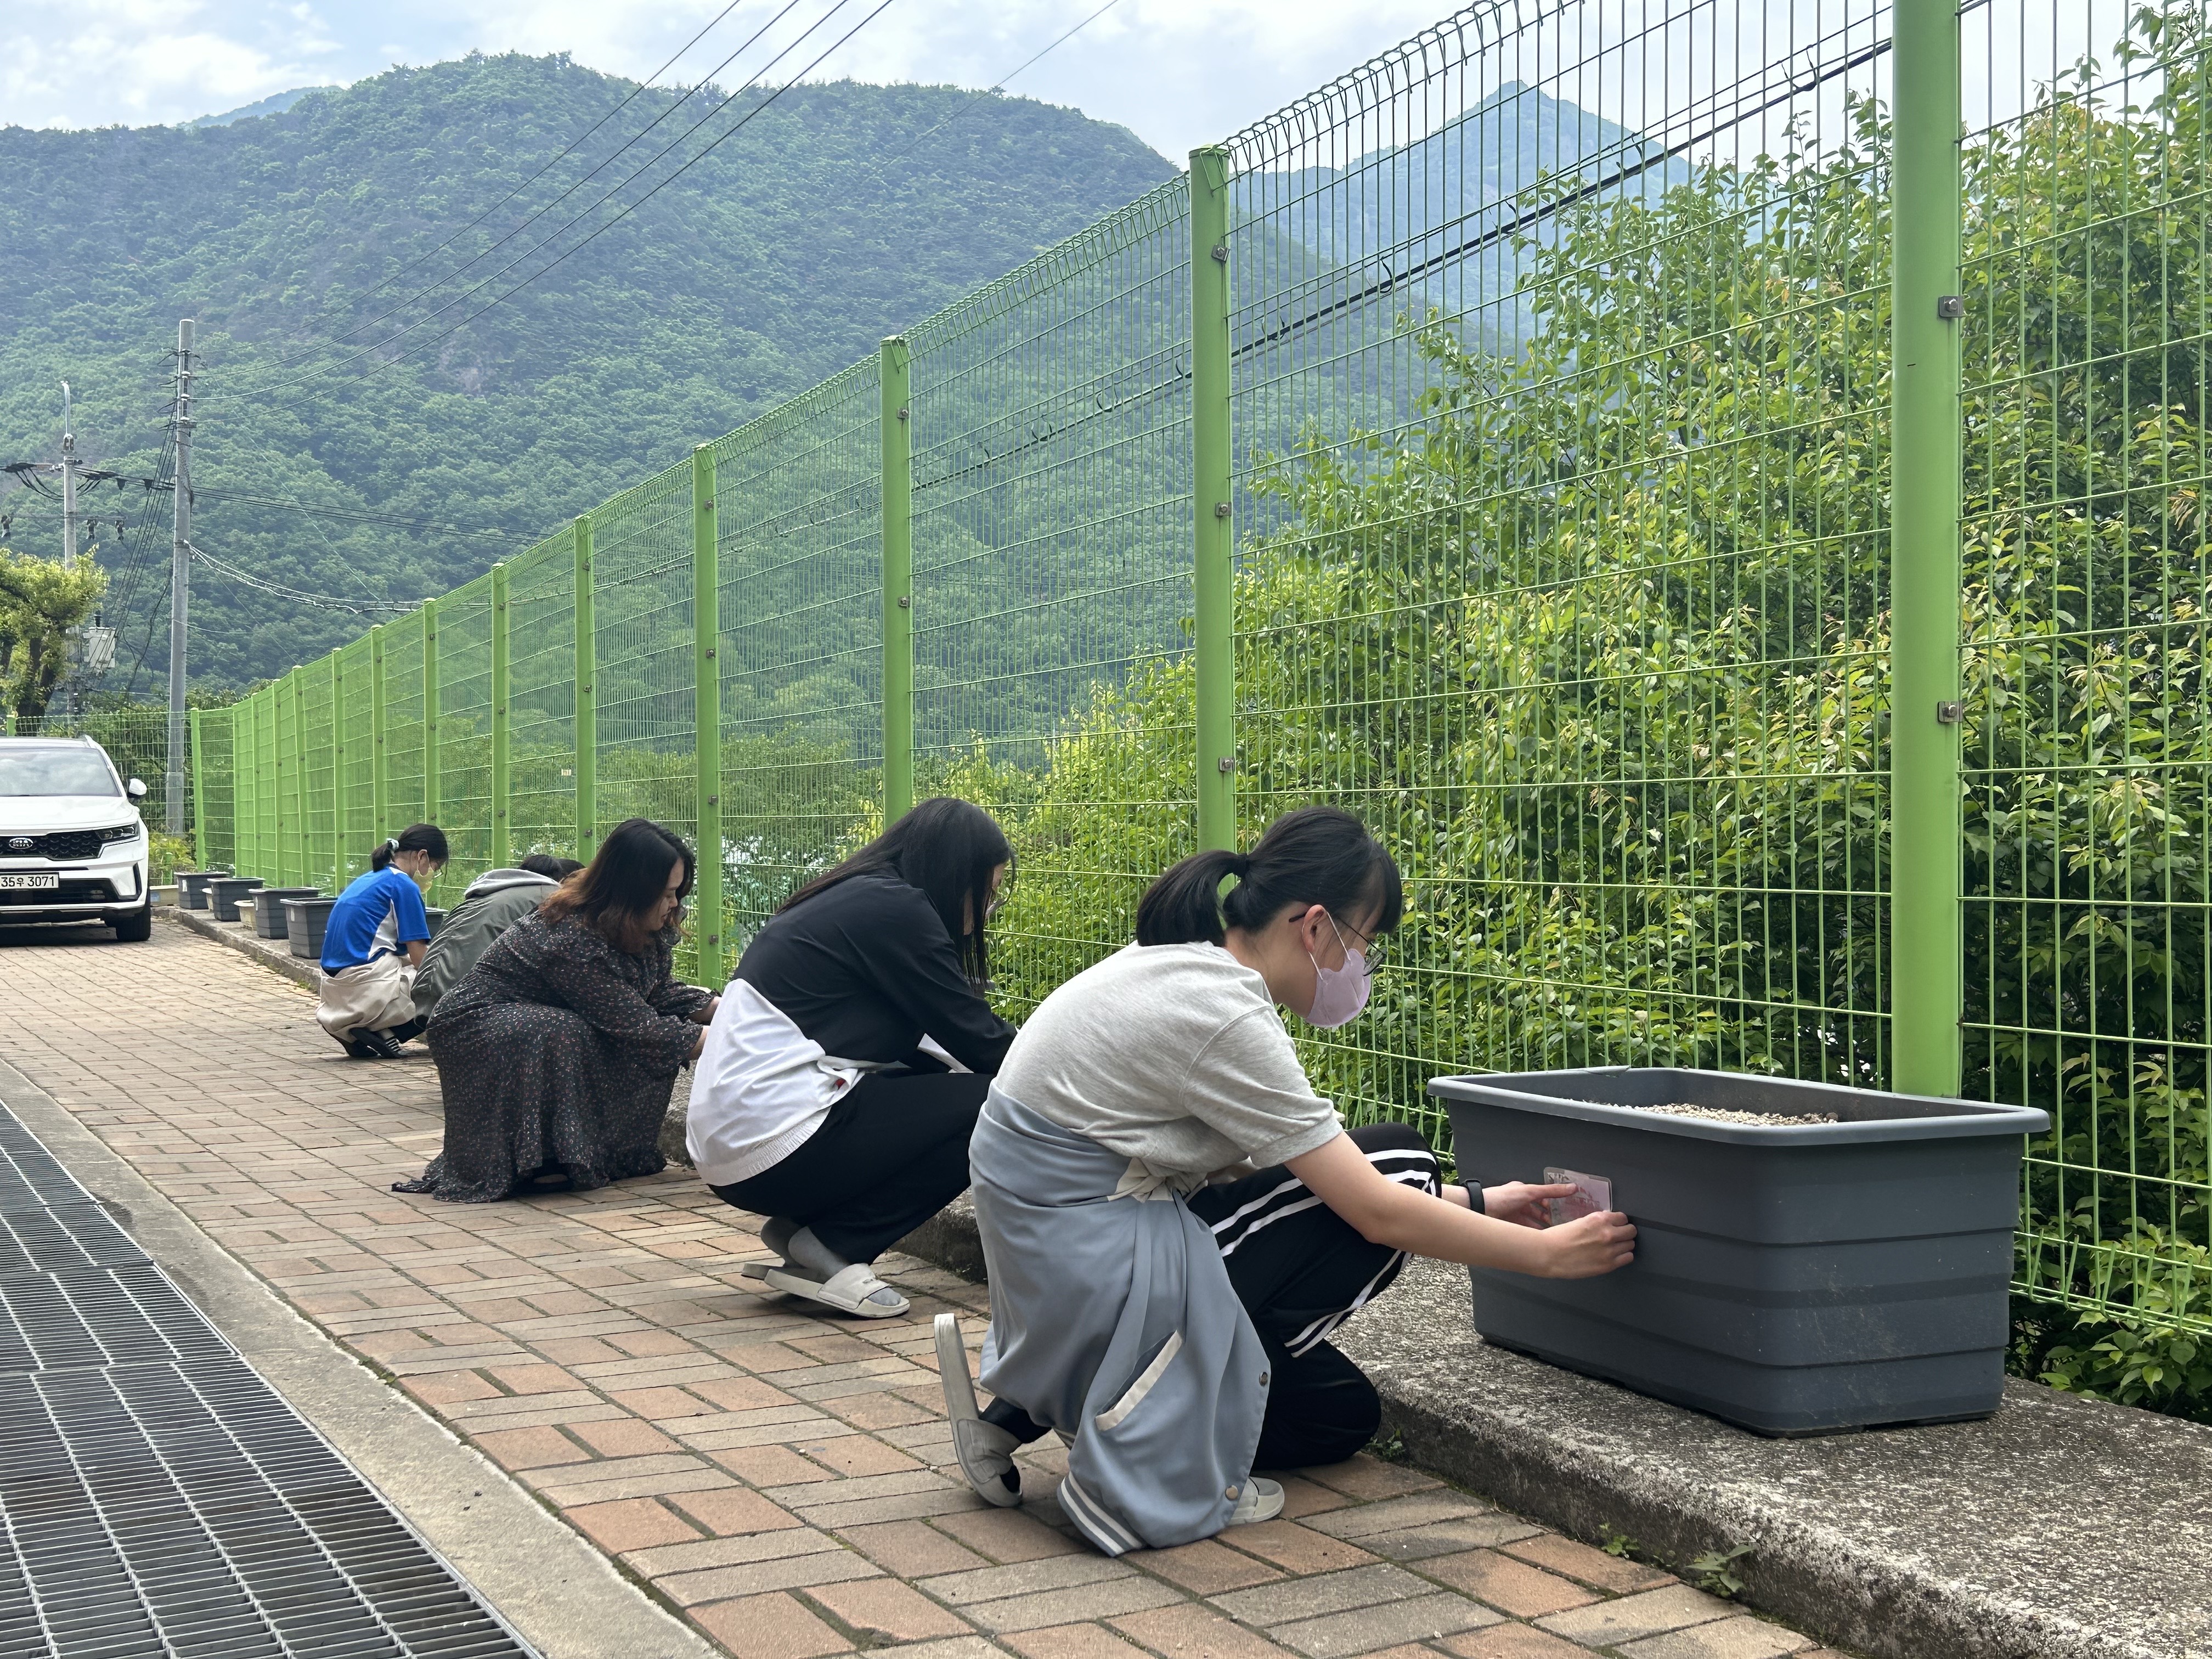 
															
															
																
																	원동중, “Let’s Go, ‘마’!” 벽면 녹화 프로젝트로 기후 위기 대응 나섰다 [3번째 이미지]
																
																
															
														